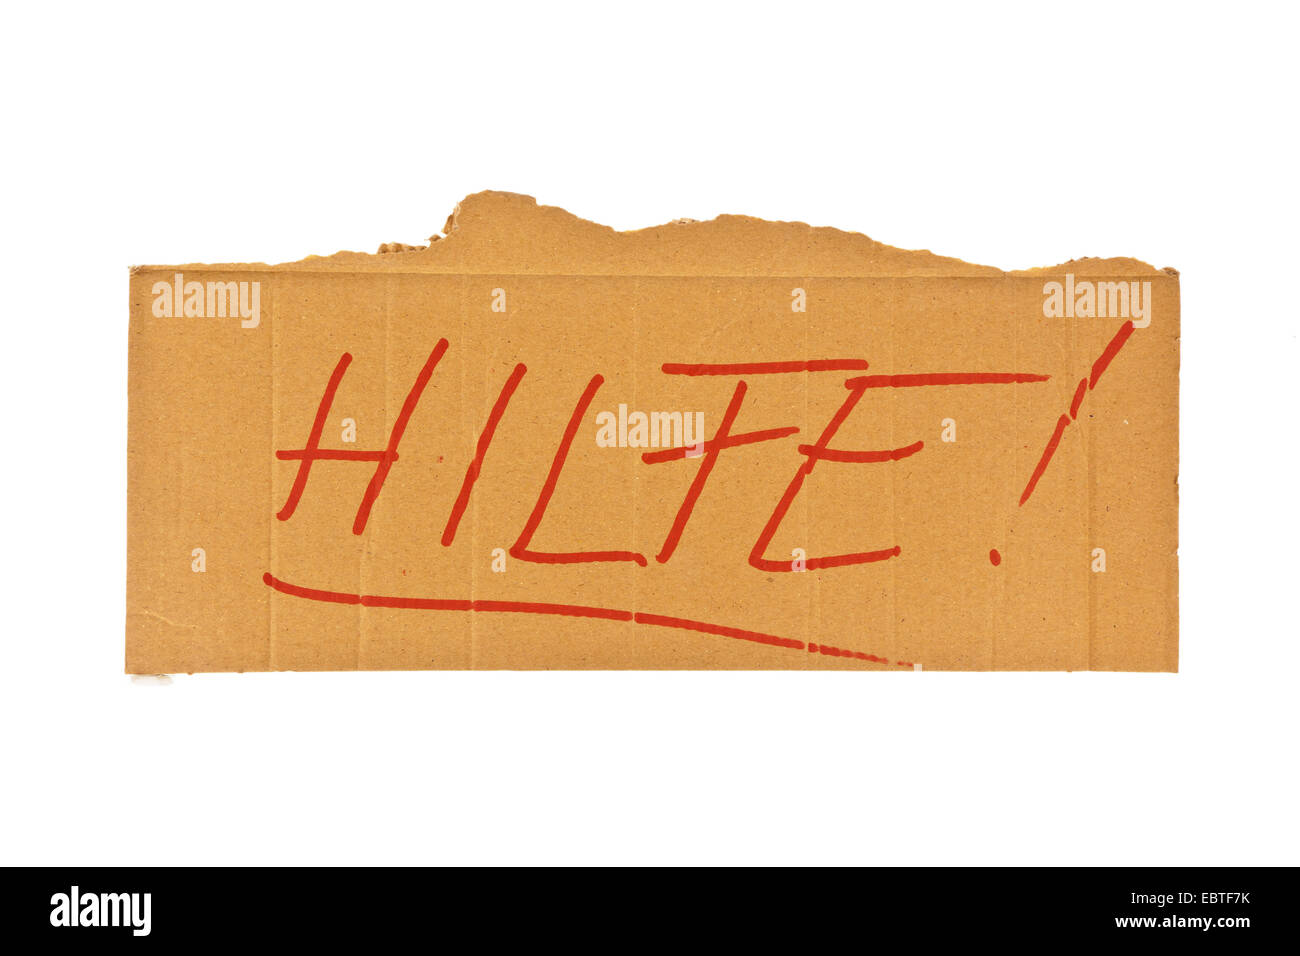 Segno di cartone di una persona senza dimora con la scritta 'Hilfe!" ("Aiuto!") Foto Stock